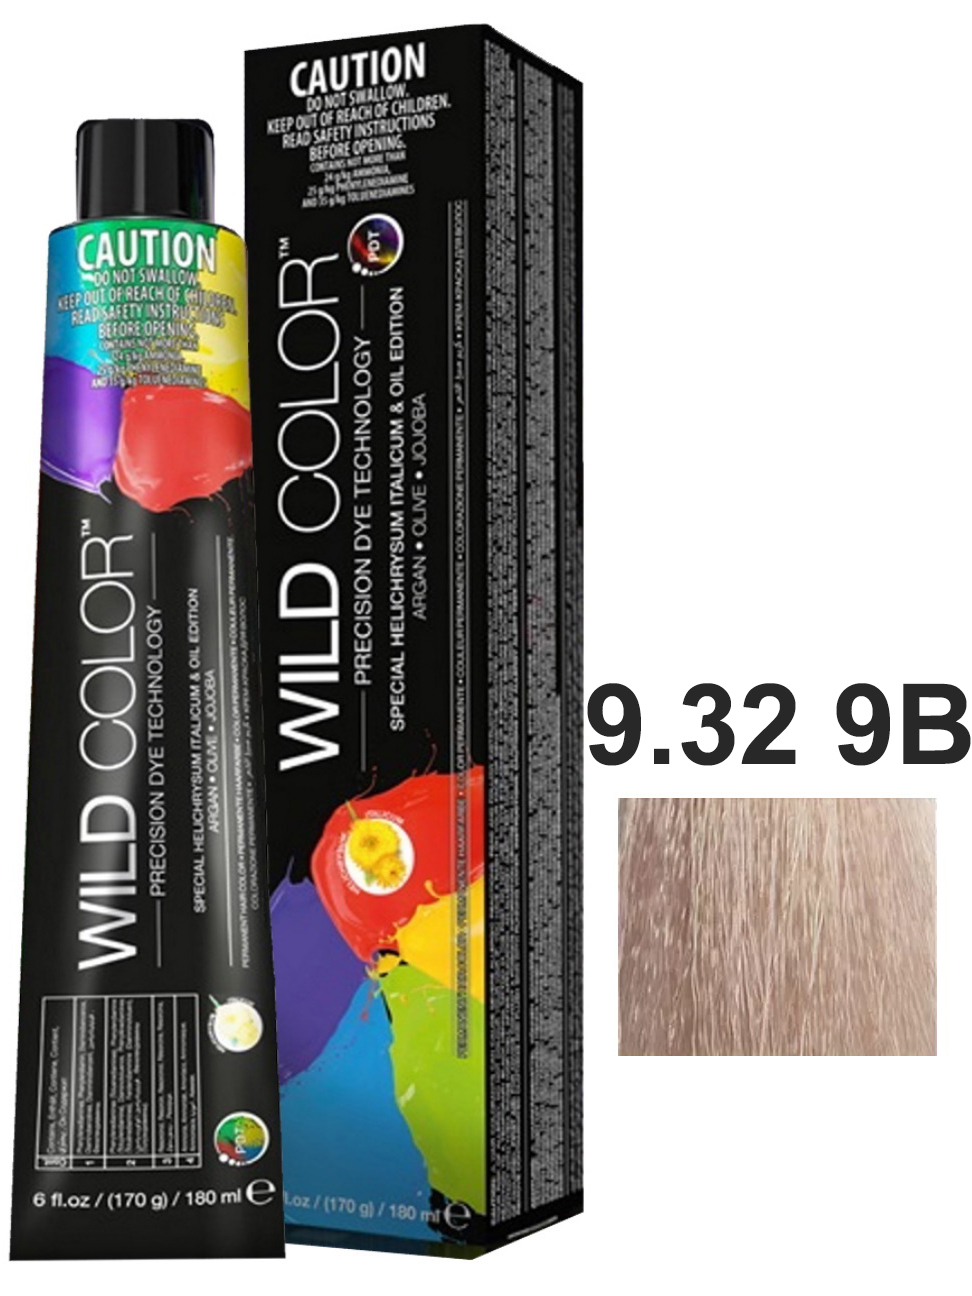 Крем-краска для волос WildColor PERMANENT COLOR 9.32 9B очень светлый блонд бежевый 180 мл краска для волос wildcolor 5 11 5aa интенсивно пепельный светло коричневый 180 мл